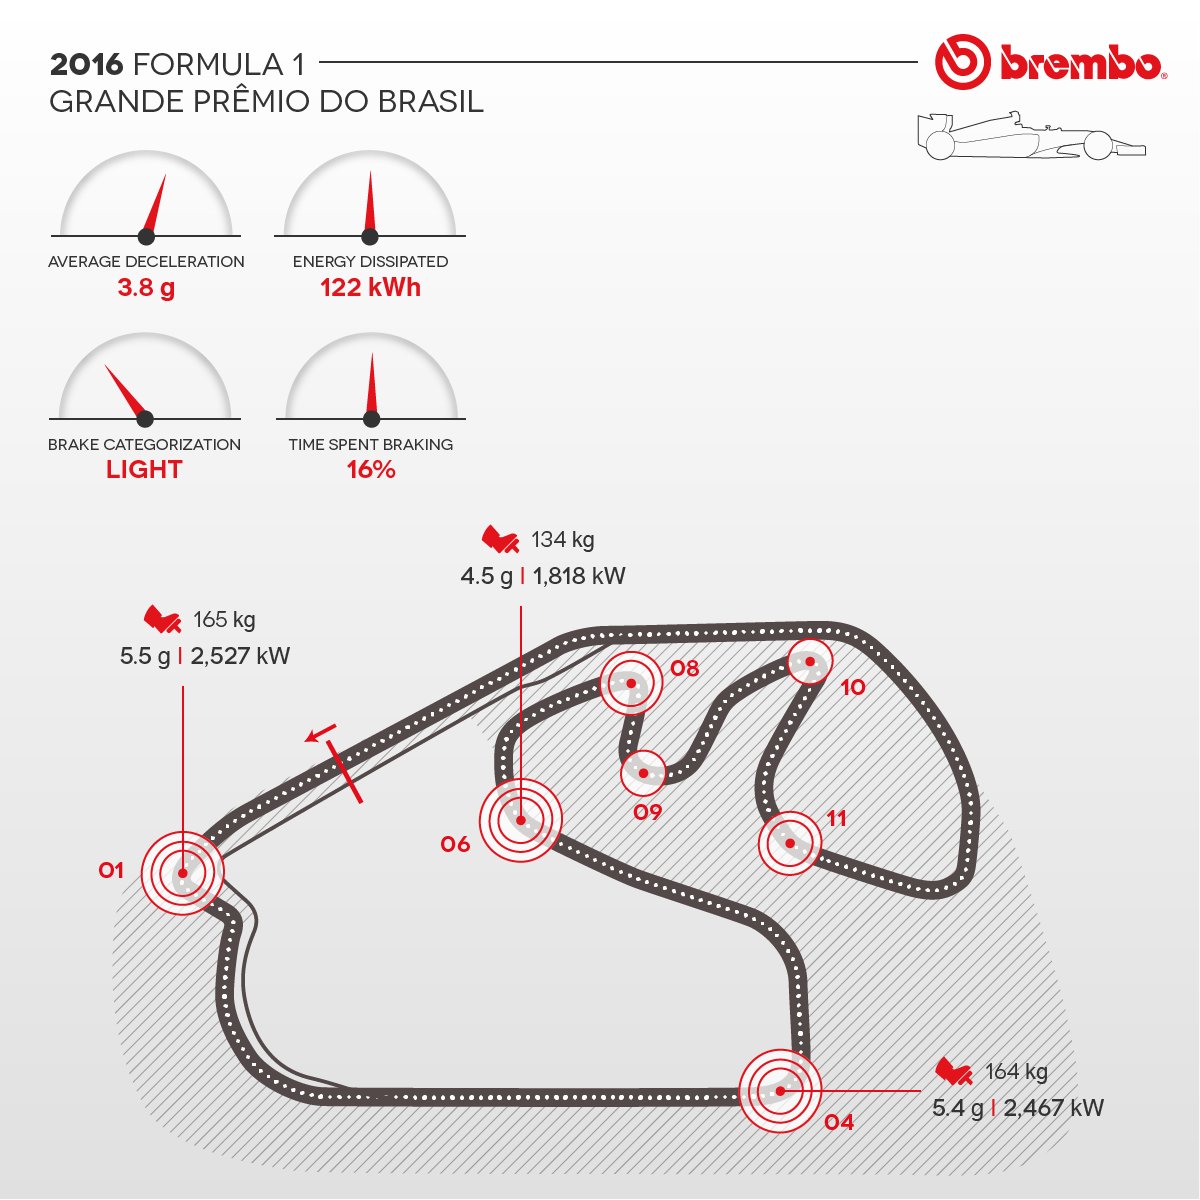 Representación detallada del circuito de Brasil 2016 con curvas detalles Brembo